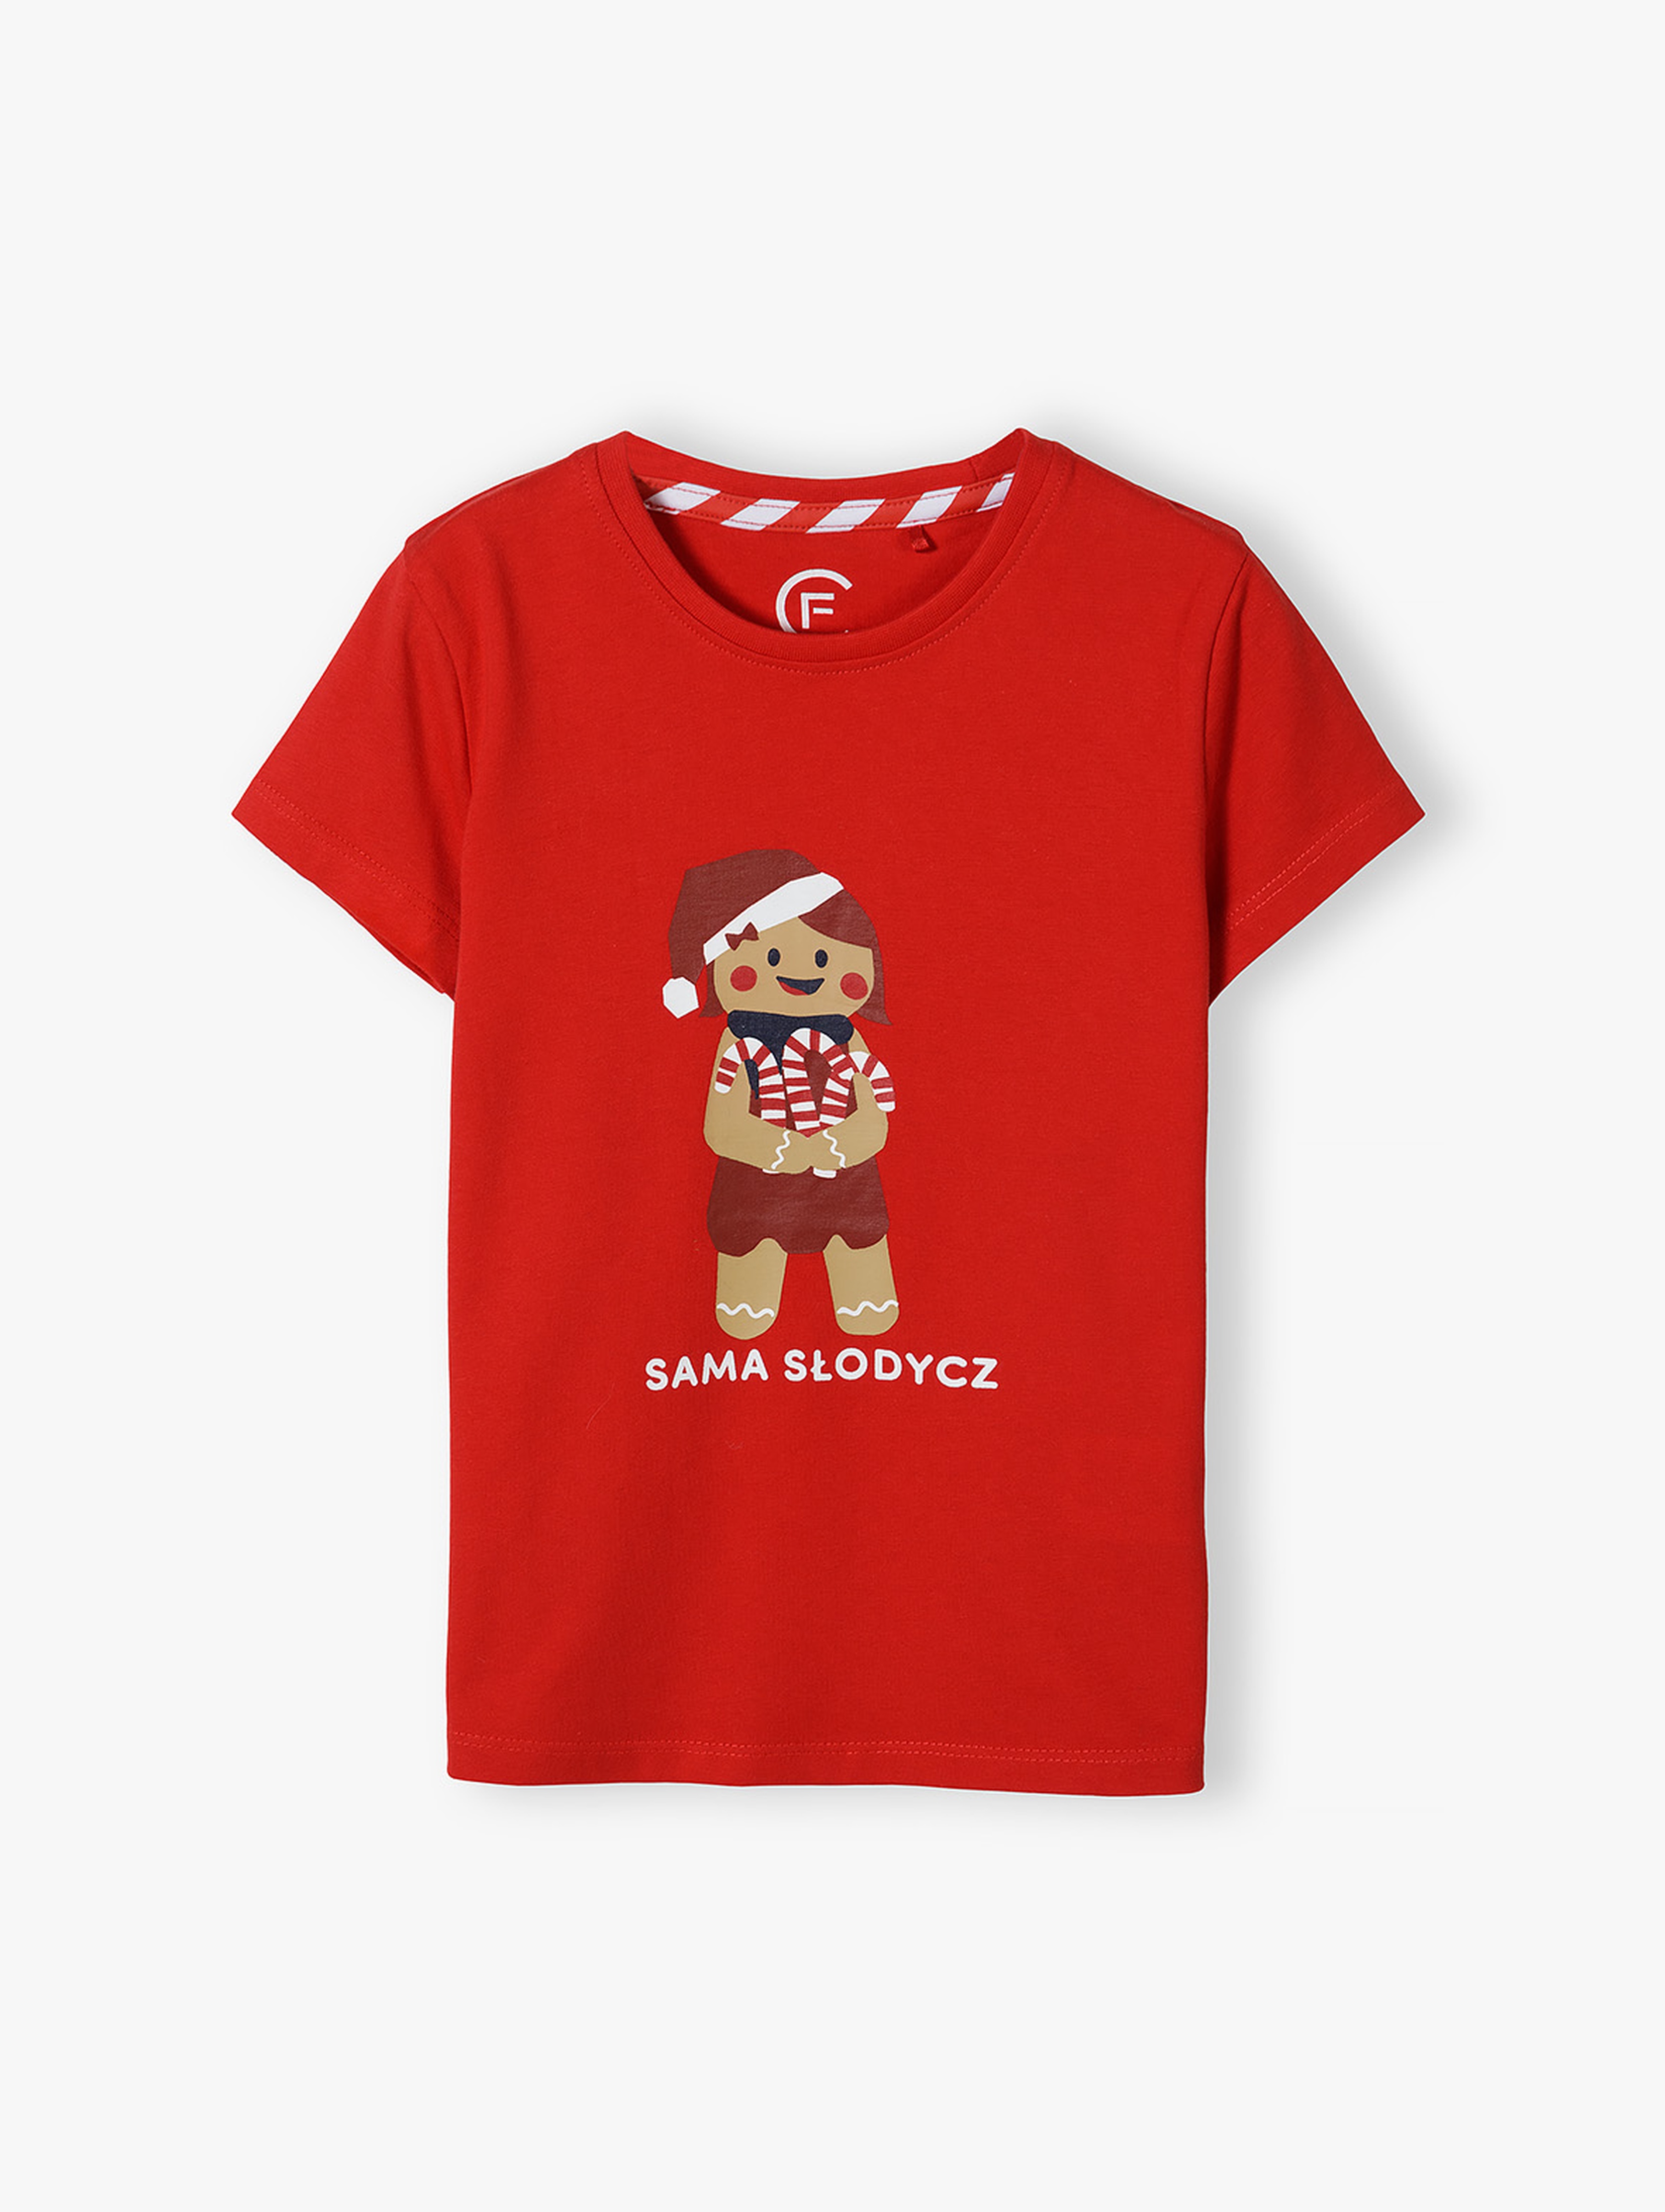 Bawełniany tshirt z nadrukiem "Sama słodycz" dla dziewczynki